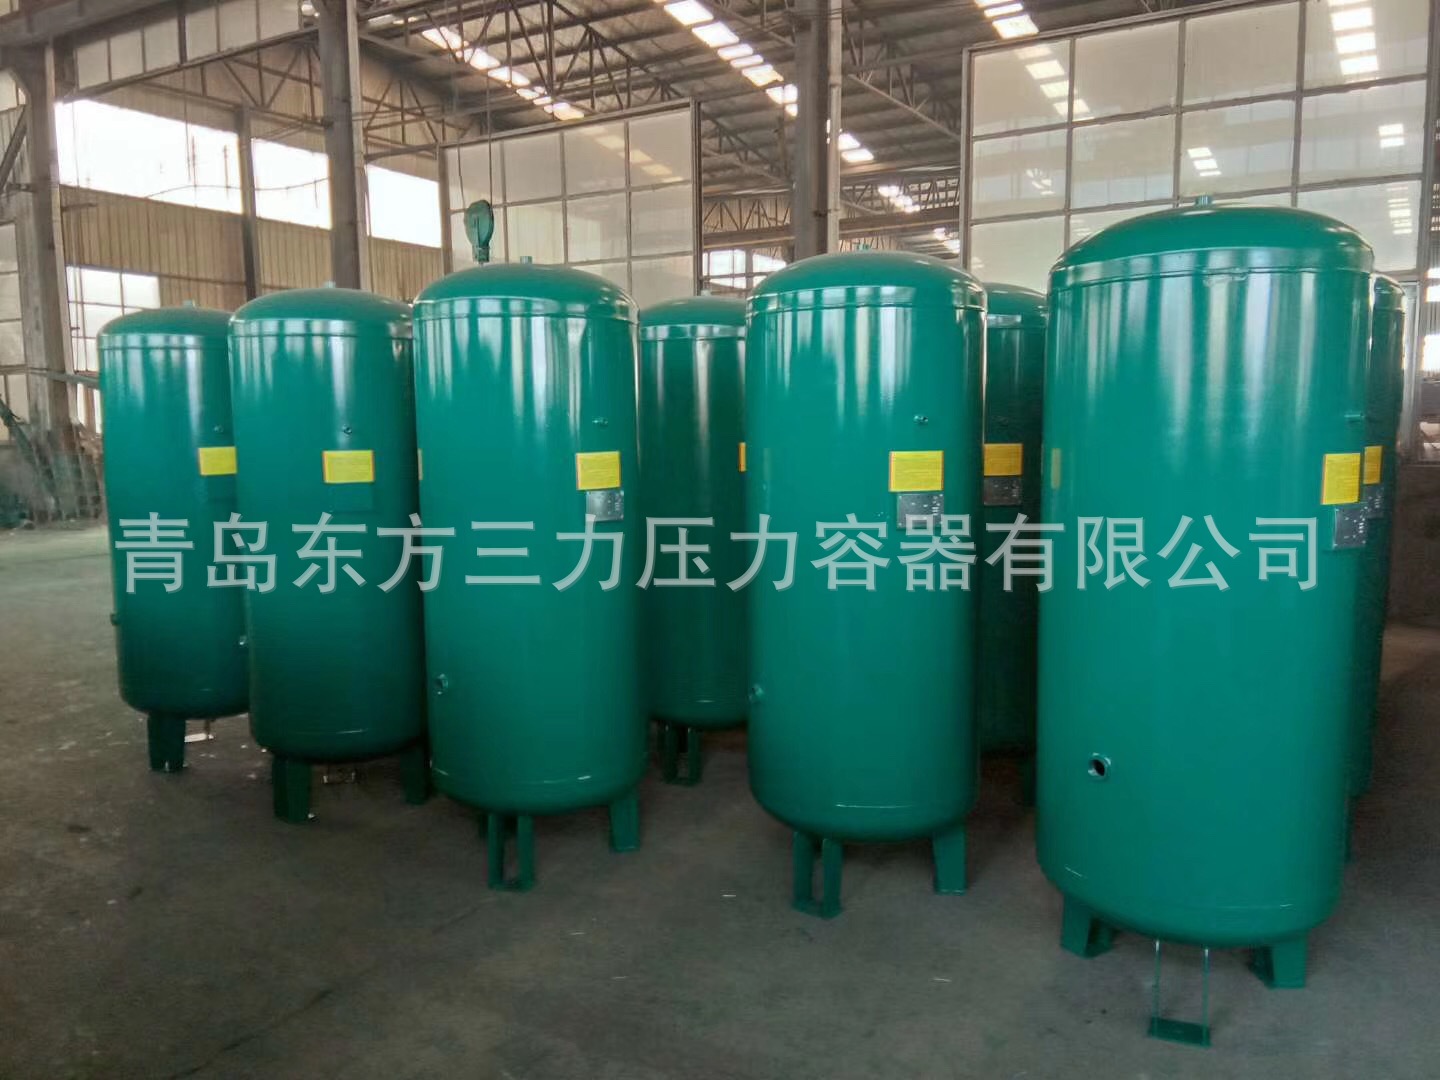 立式储气罐1立方压缩空气储罐 16公斤缓冲气压罐 北京厂家直销示例图27